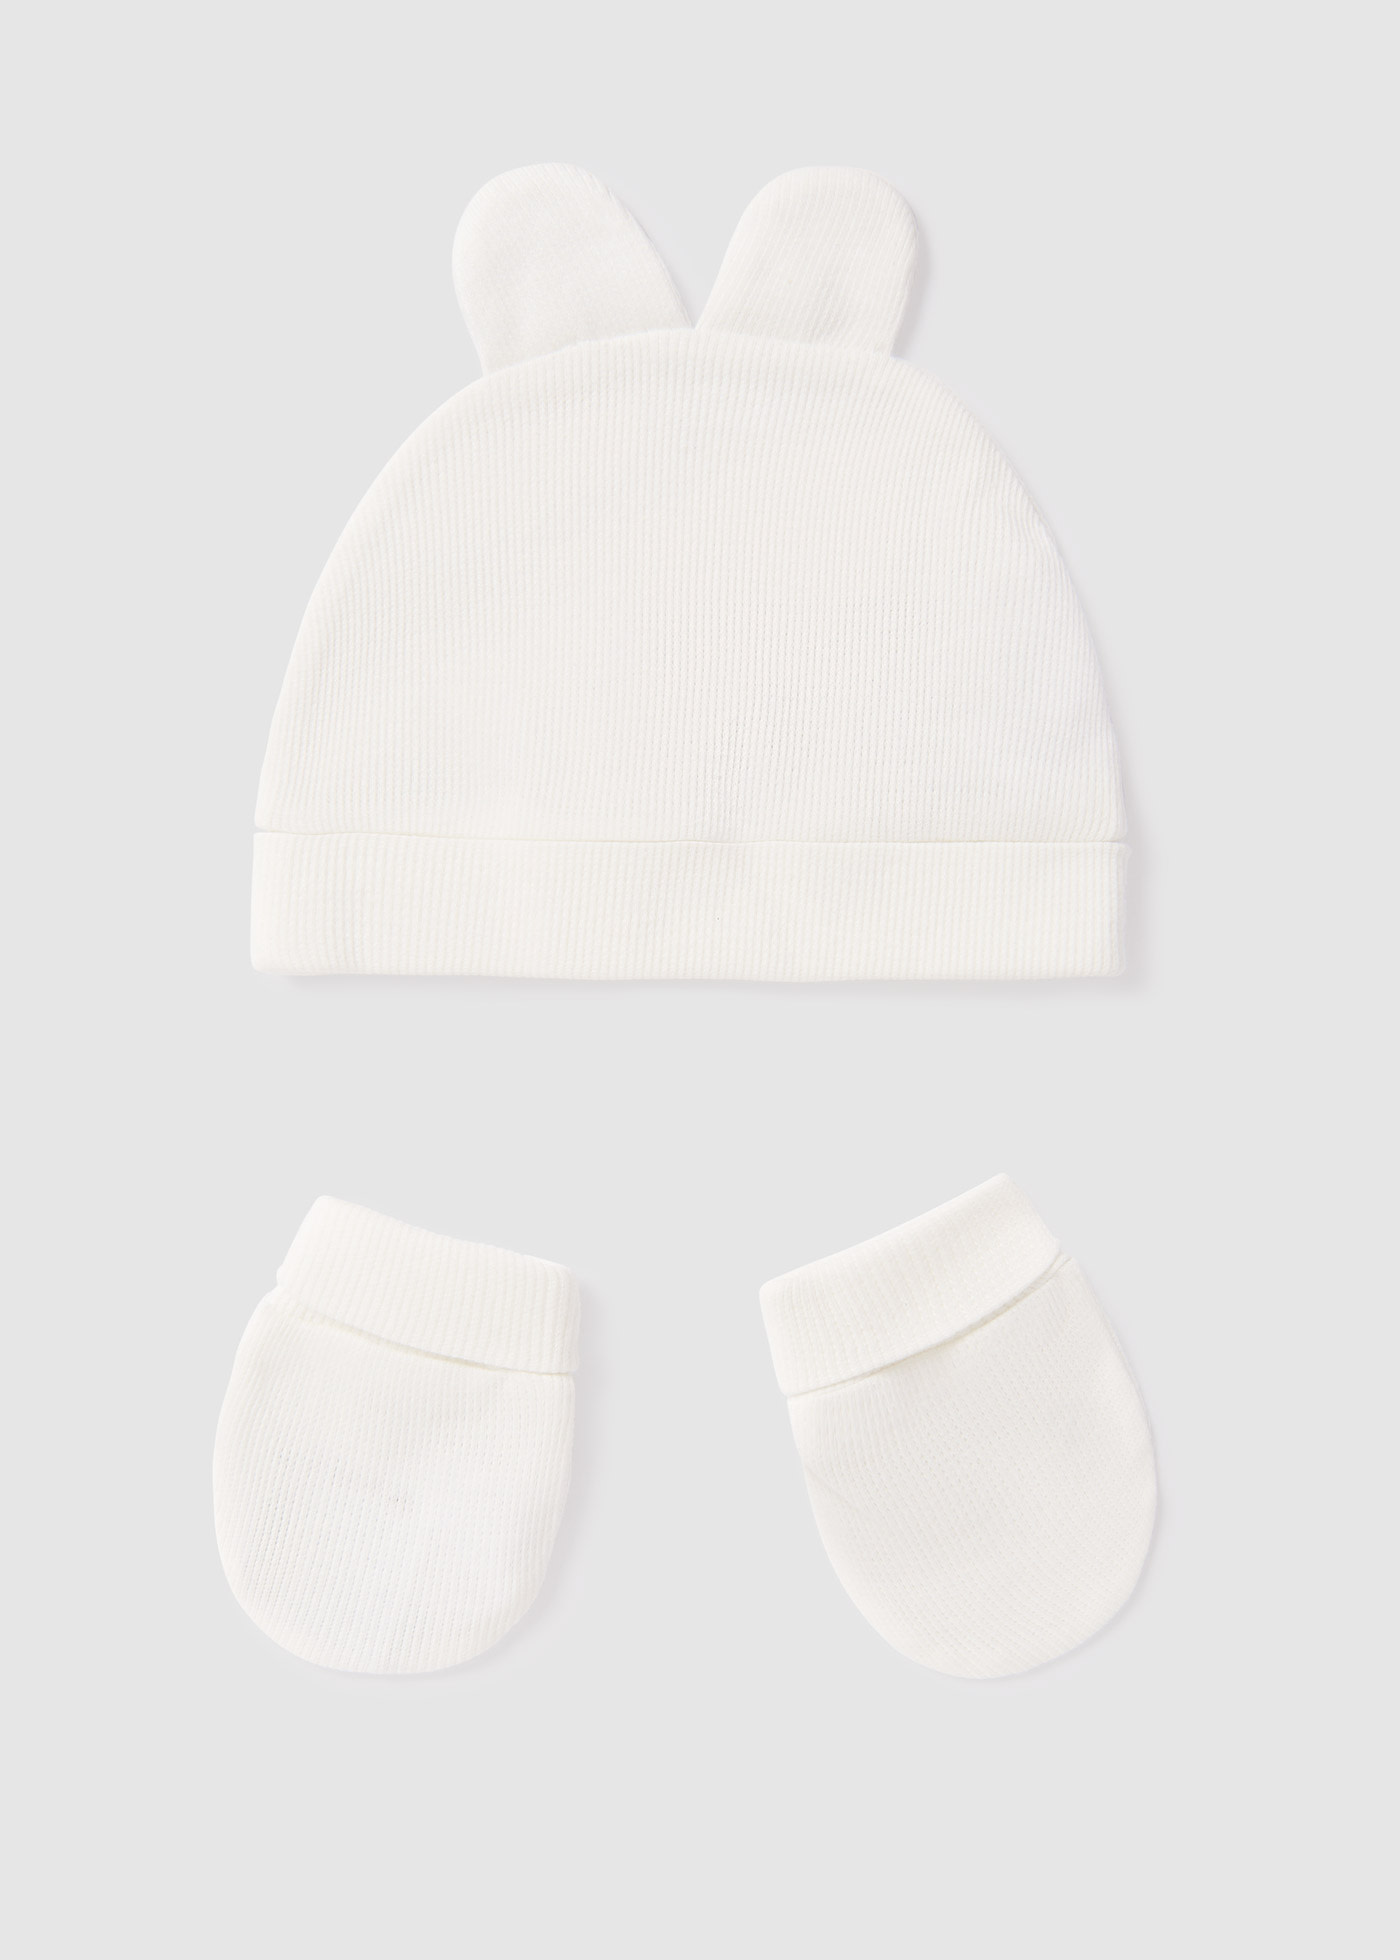 Komplet czapka i rękawiczki Better Cotton dla niemowlęcia